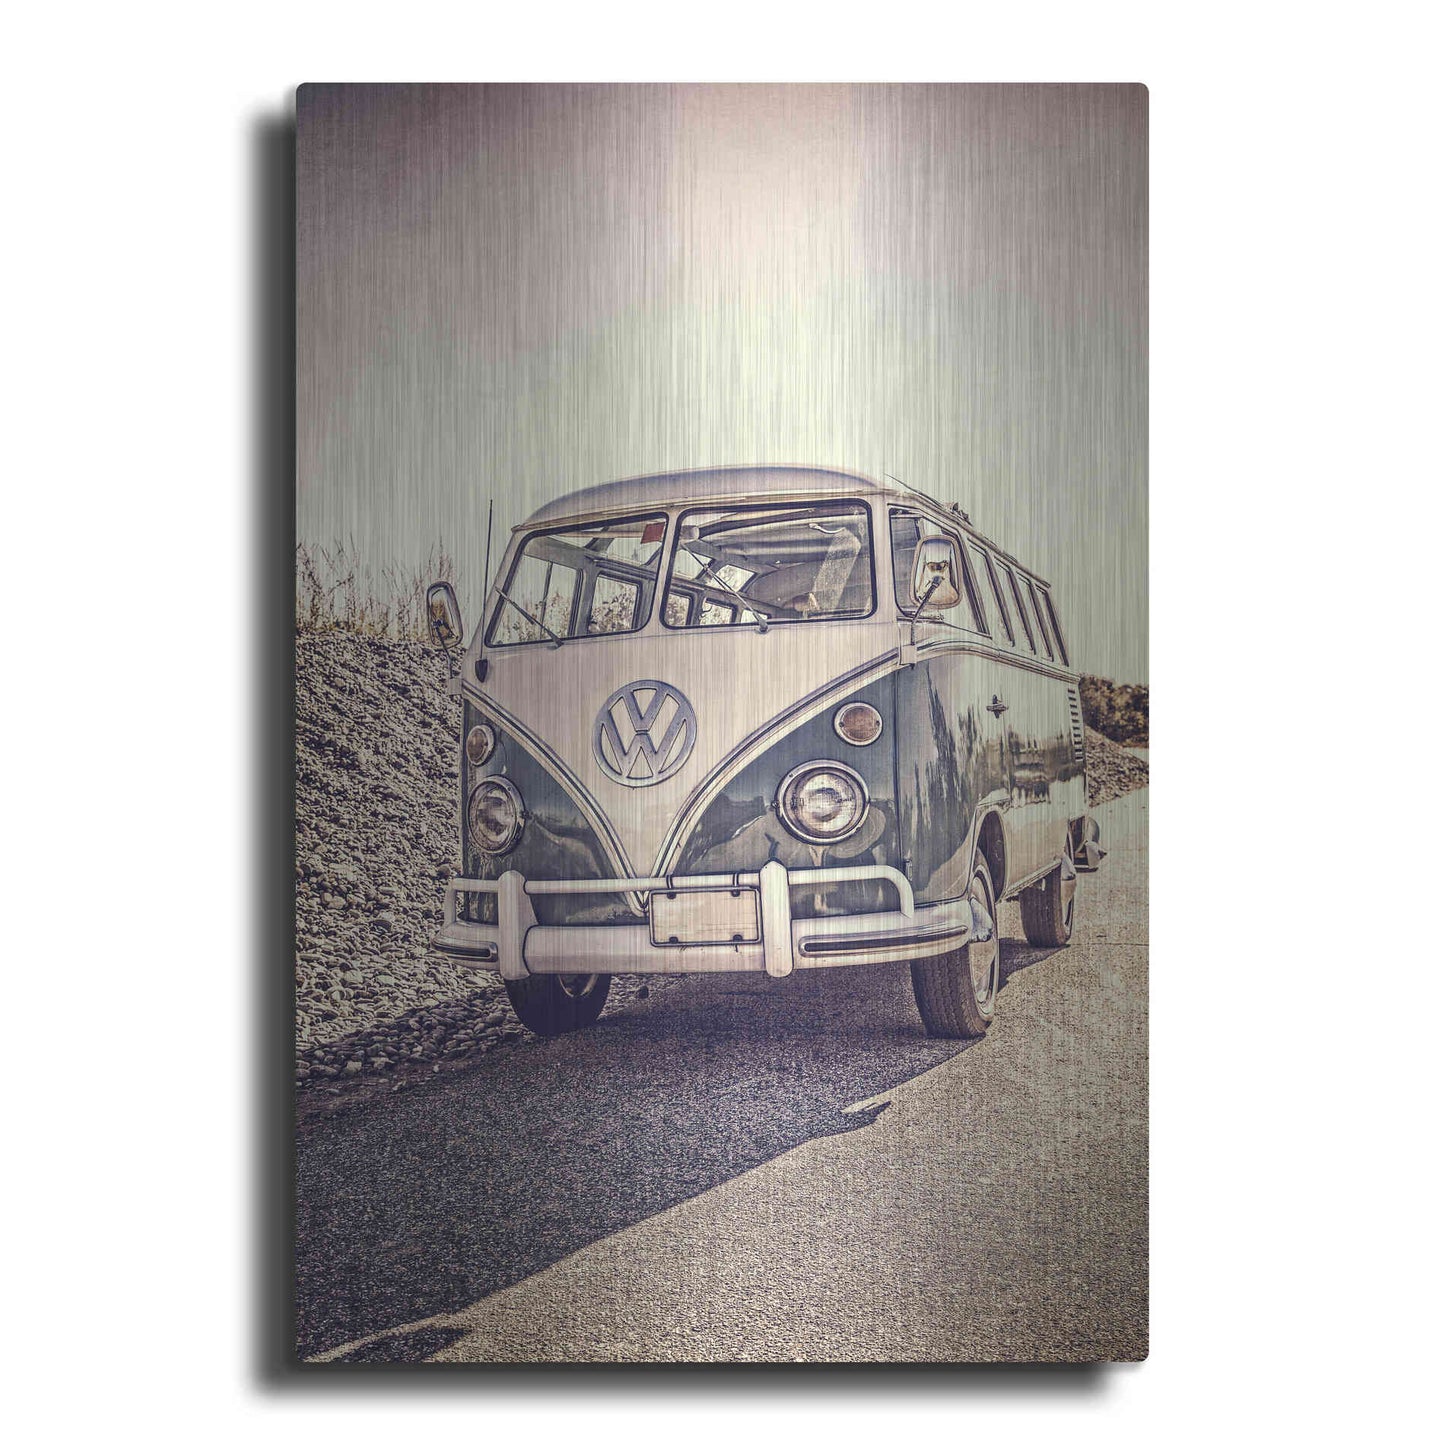 Luxe Metal Art 'Surfers’ Vintage VW Bus' by Edward M. Fielding, Metal Wall Art